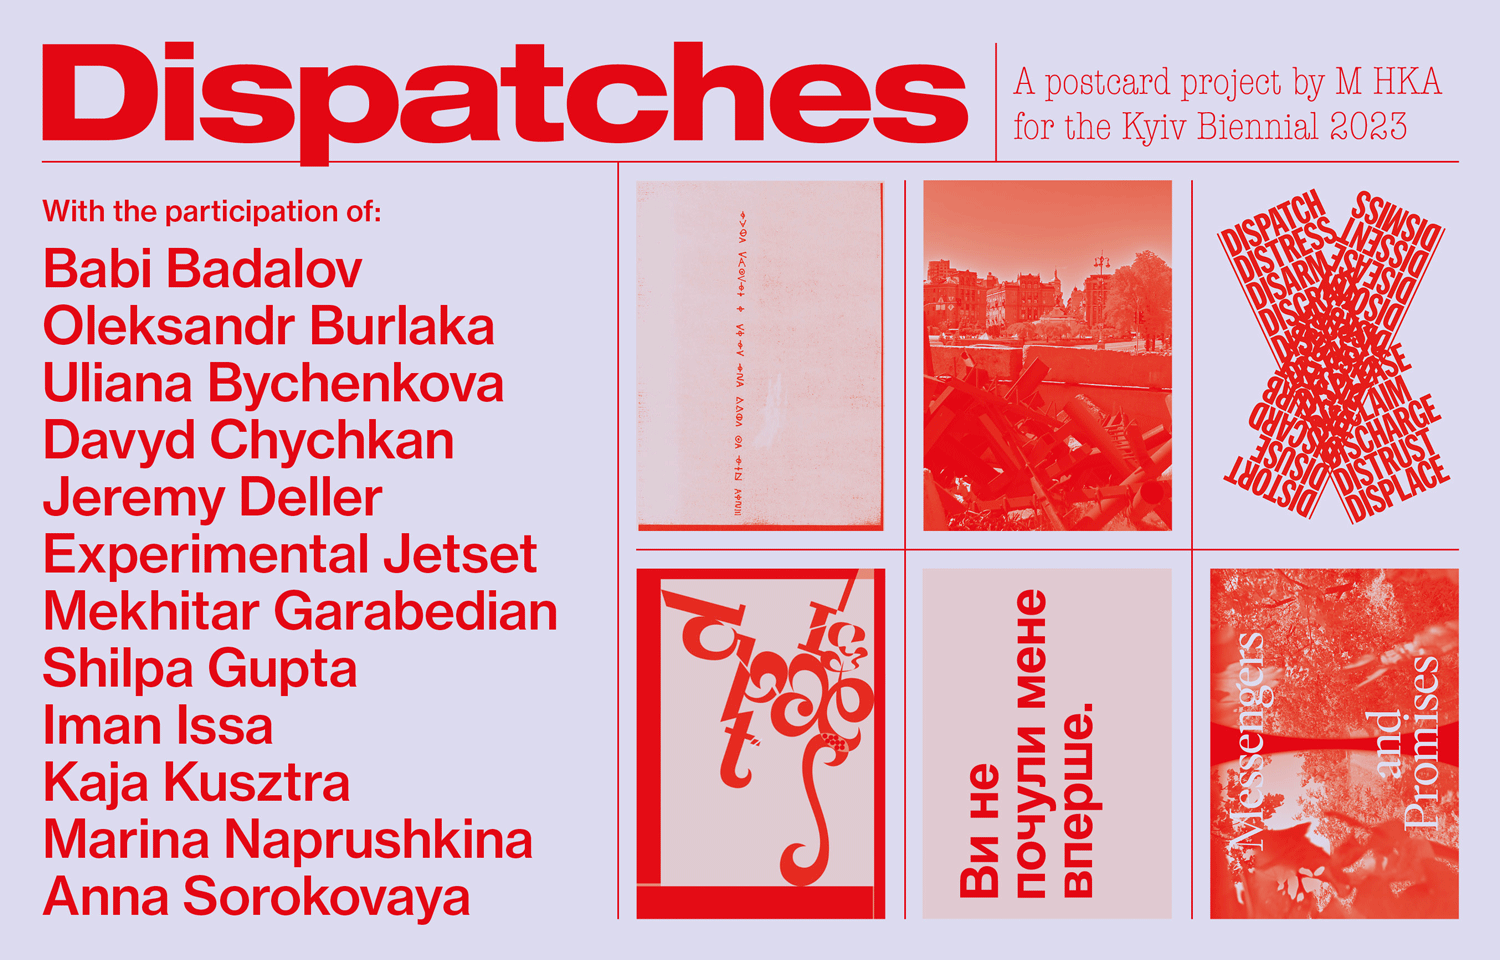 M HKA presenteert Dispatches: Kunstenaars ontwerpen postkaart als oproep tot solidariteit